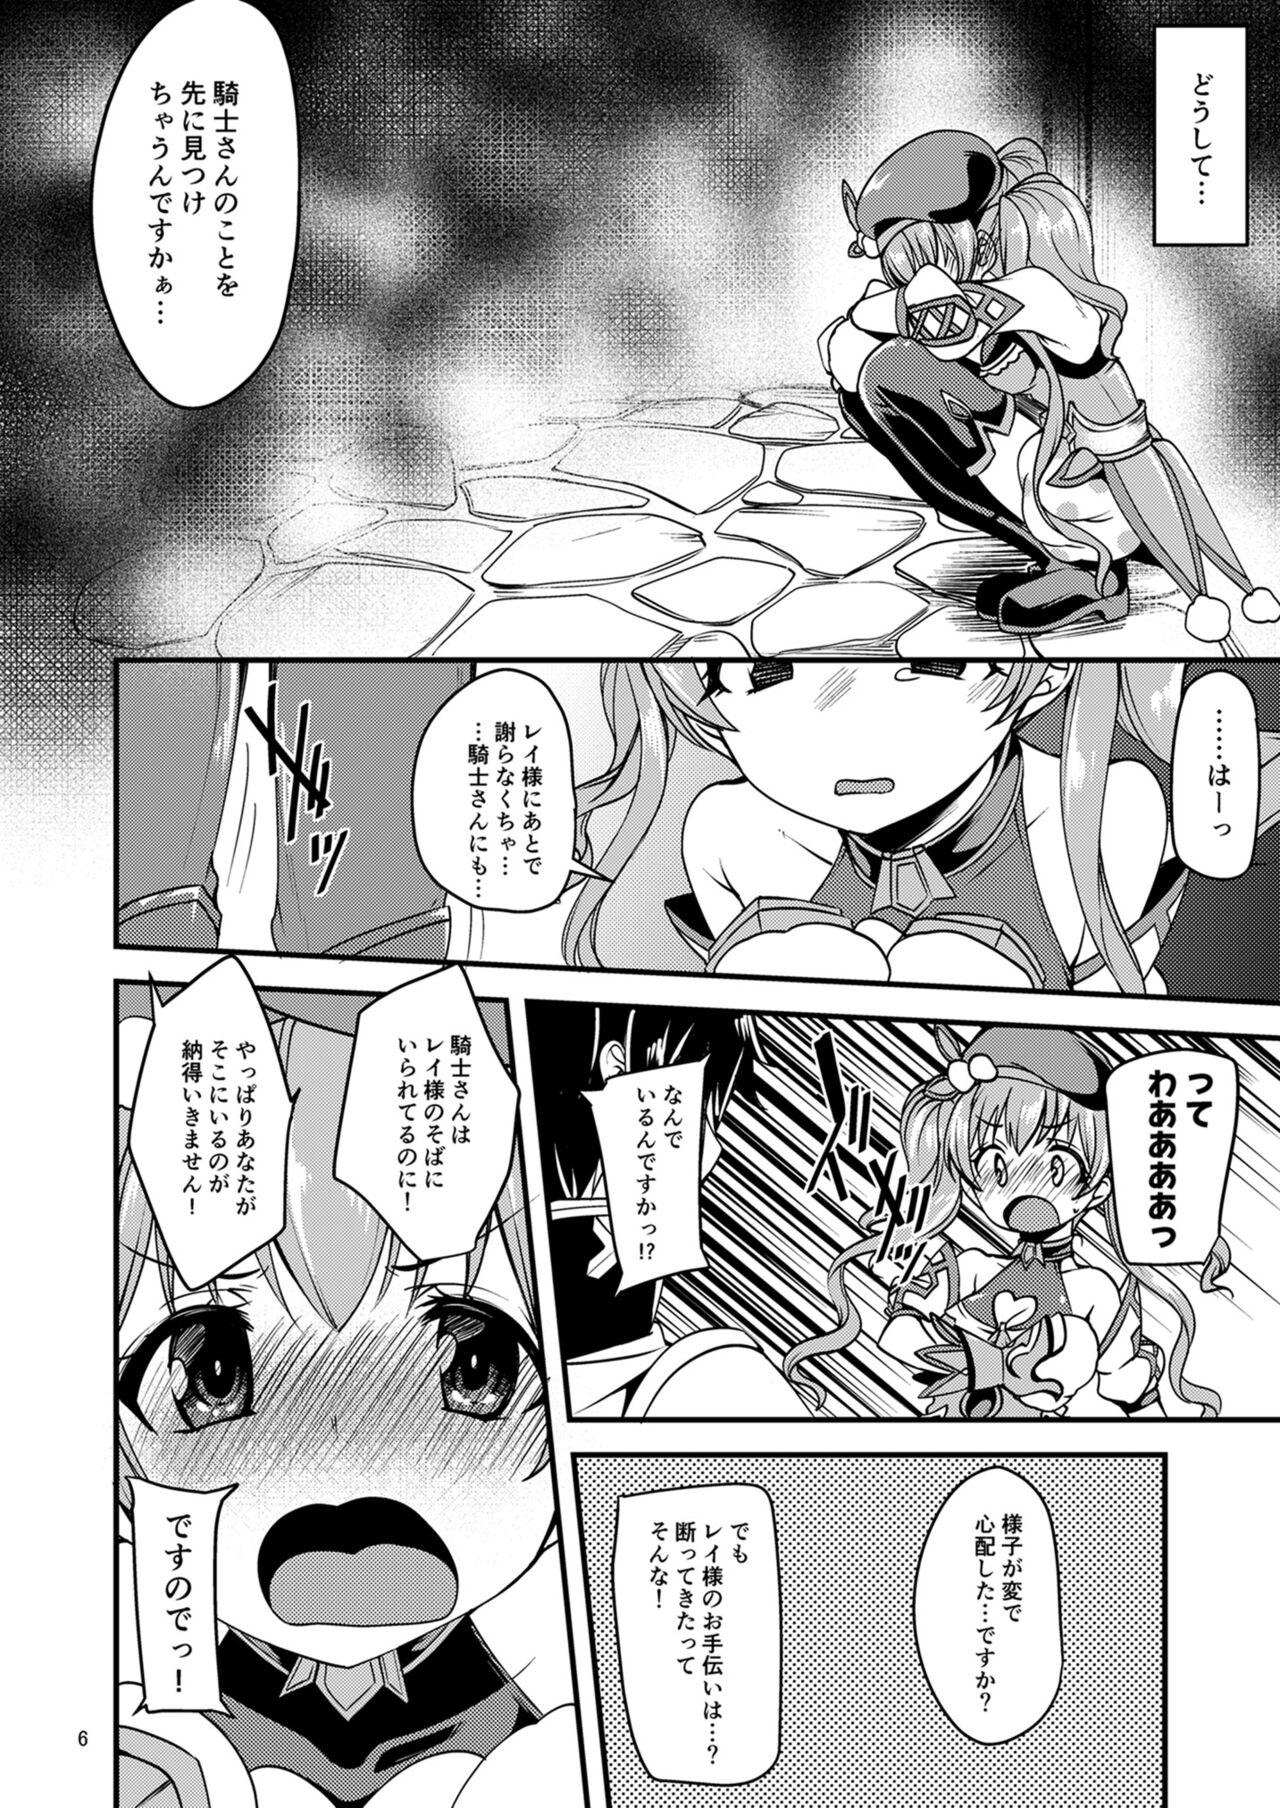 Foreskin Tsumugi Make Heroine Move!! - Princess connect Rimjob - Page 5